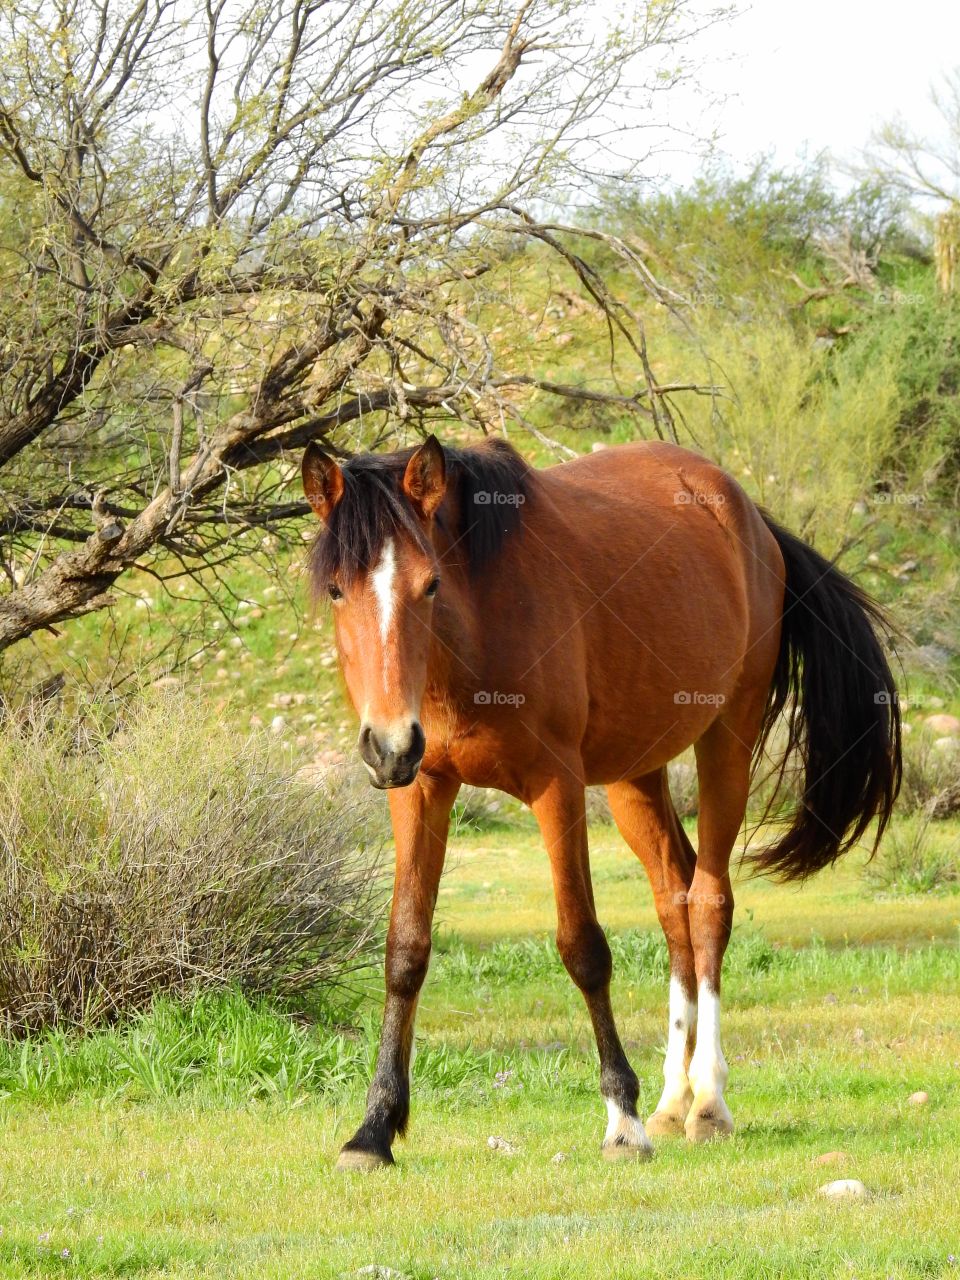 Wild horse in Arizona 